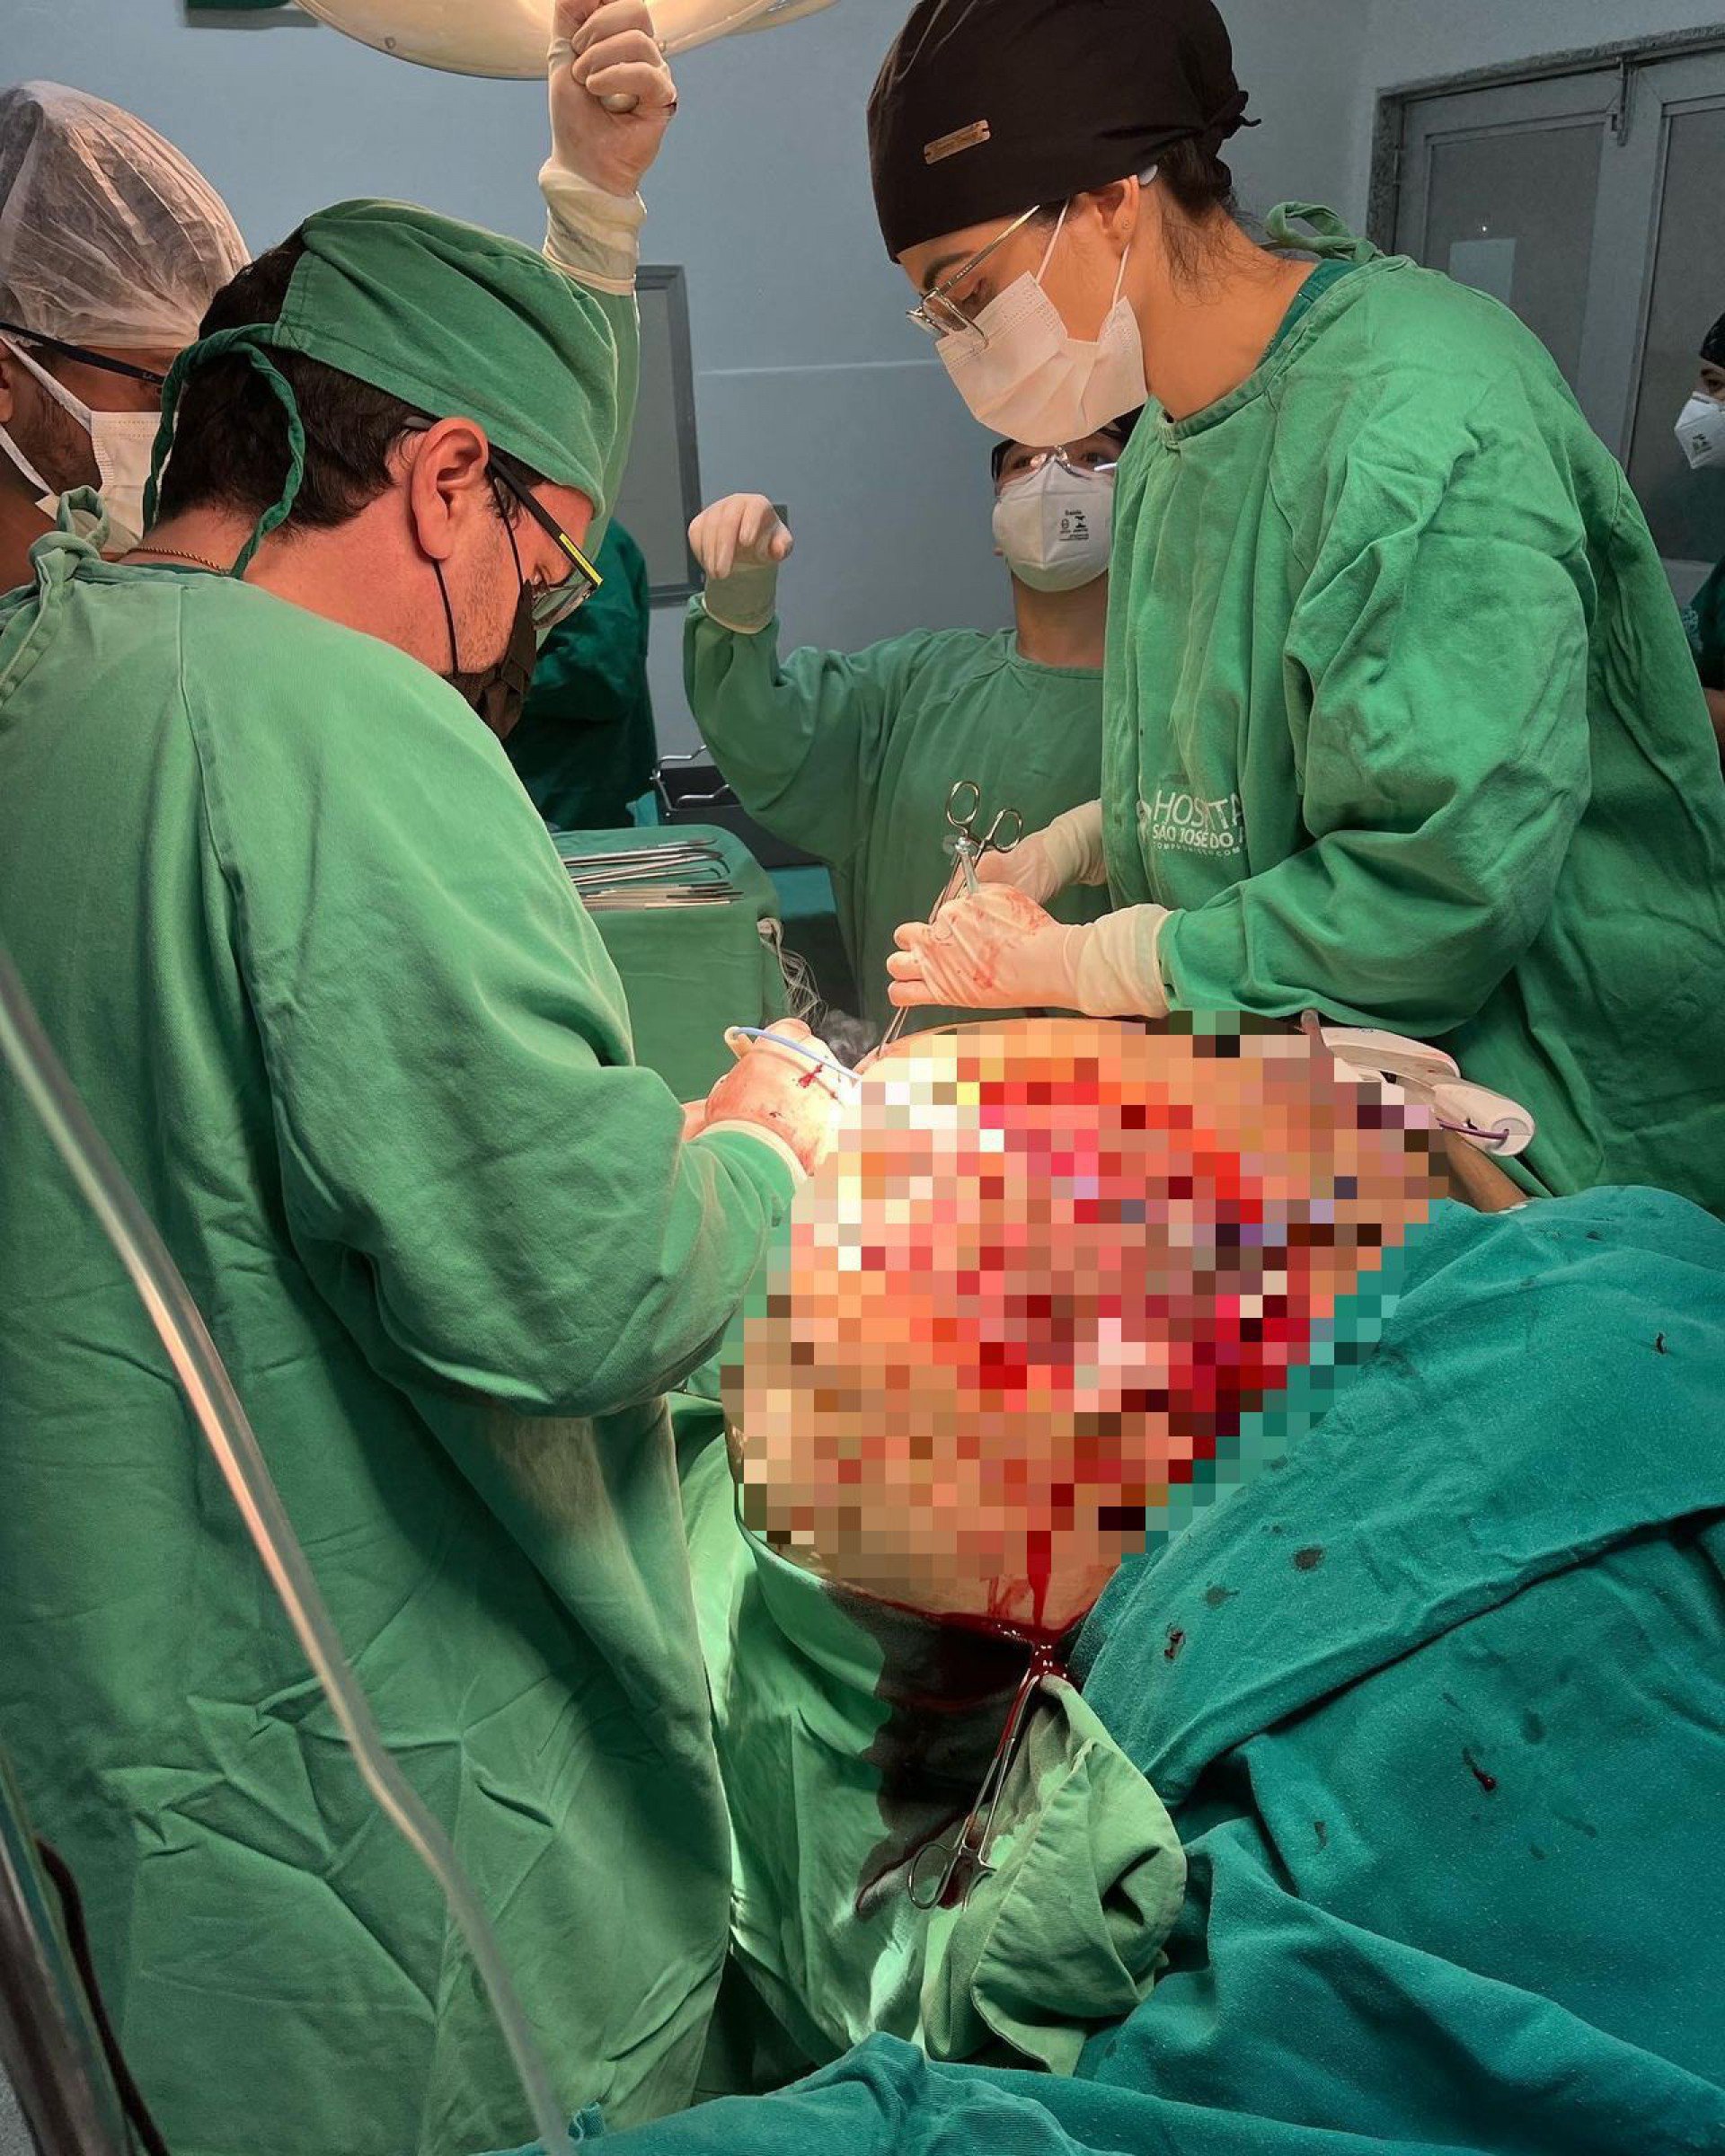 A equipe do hospital realizando a cirurgia - Divulgação